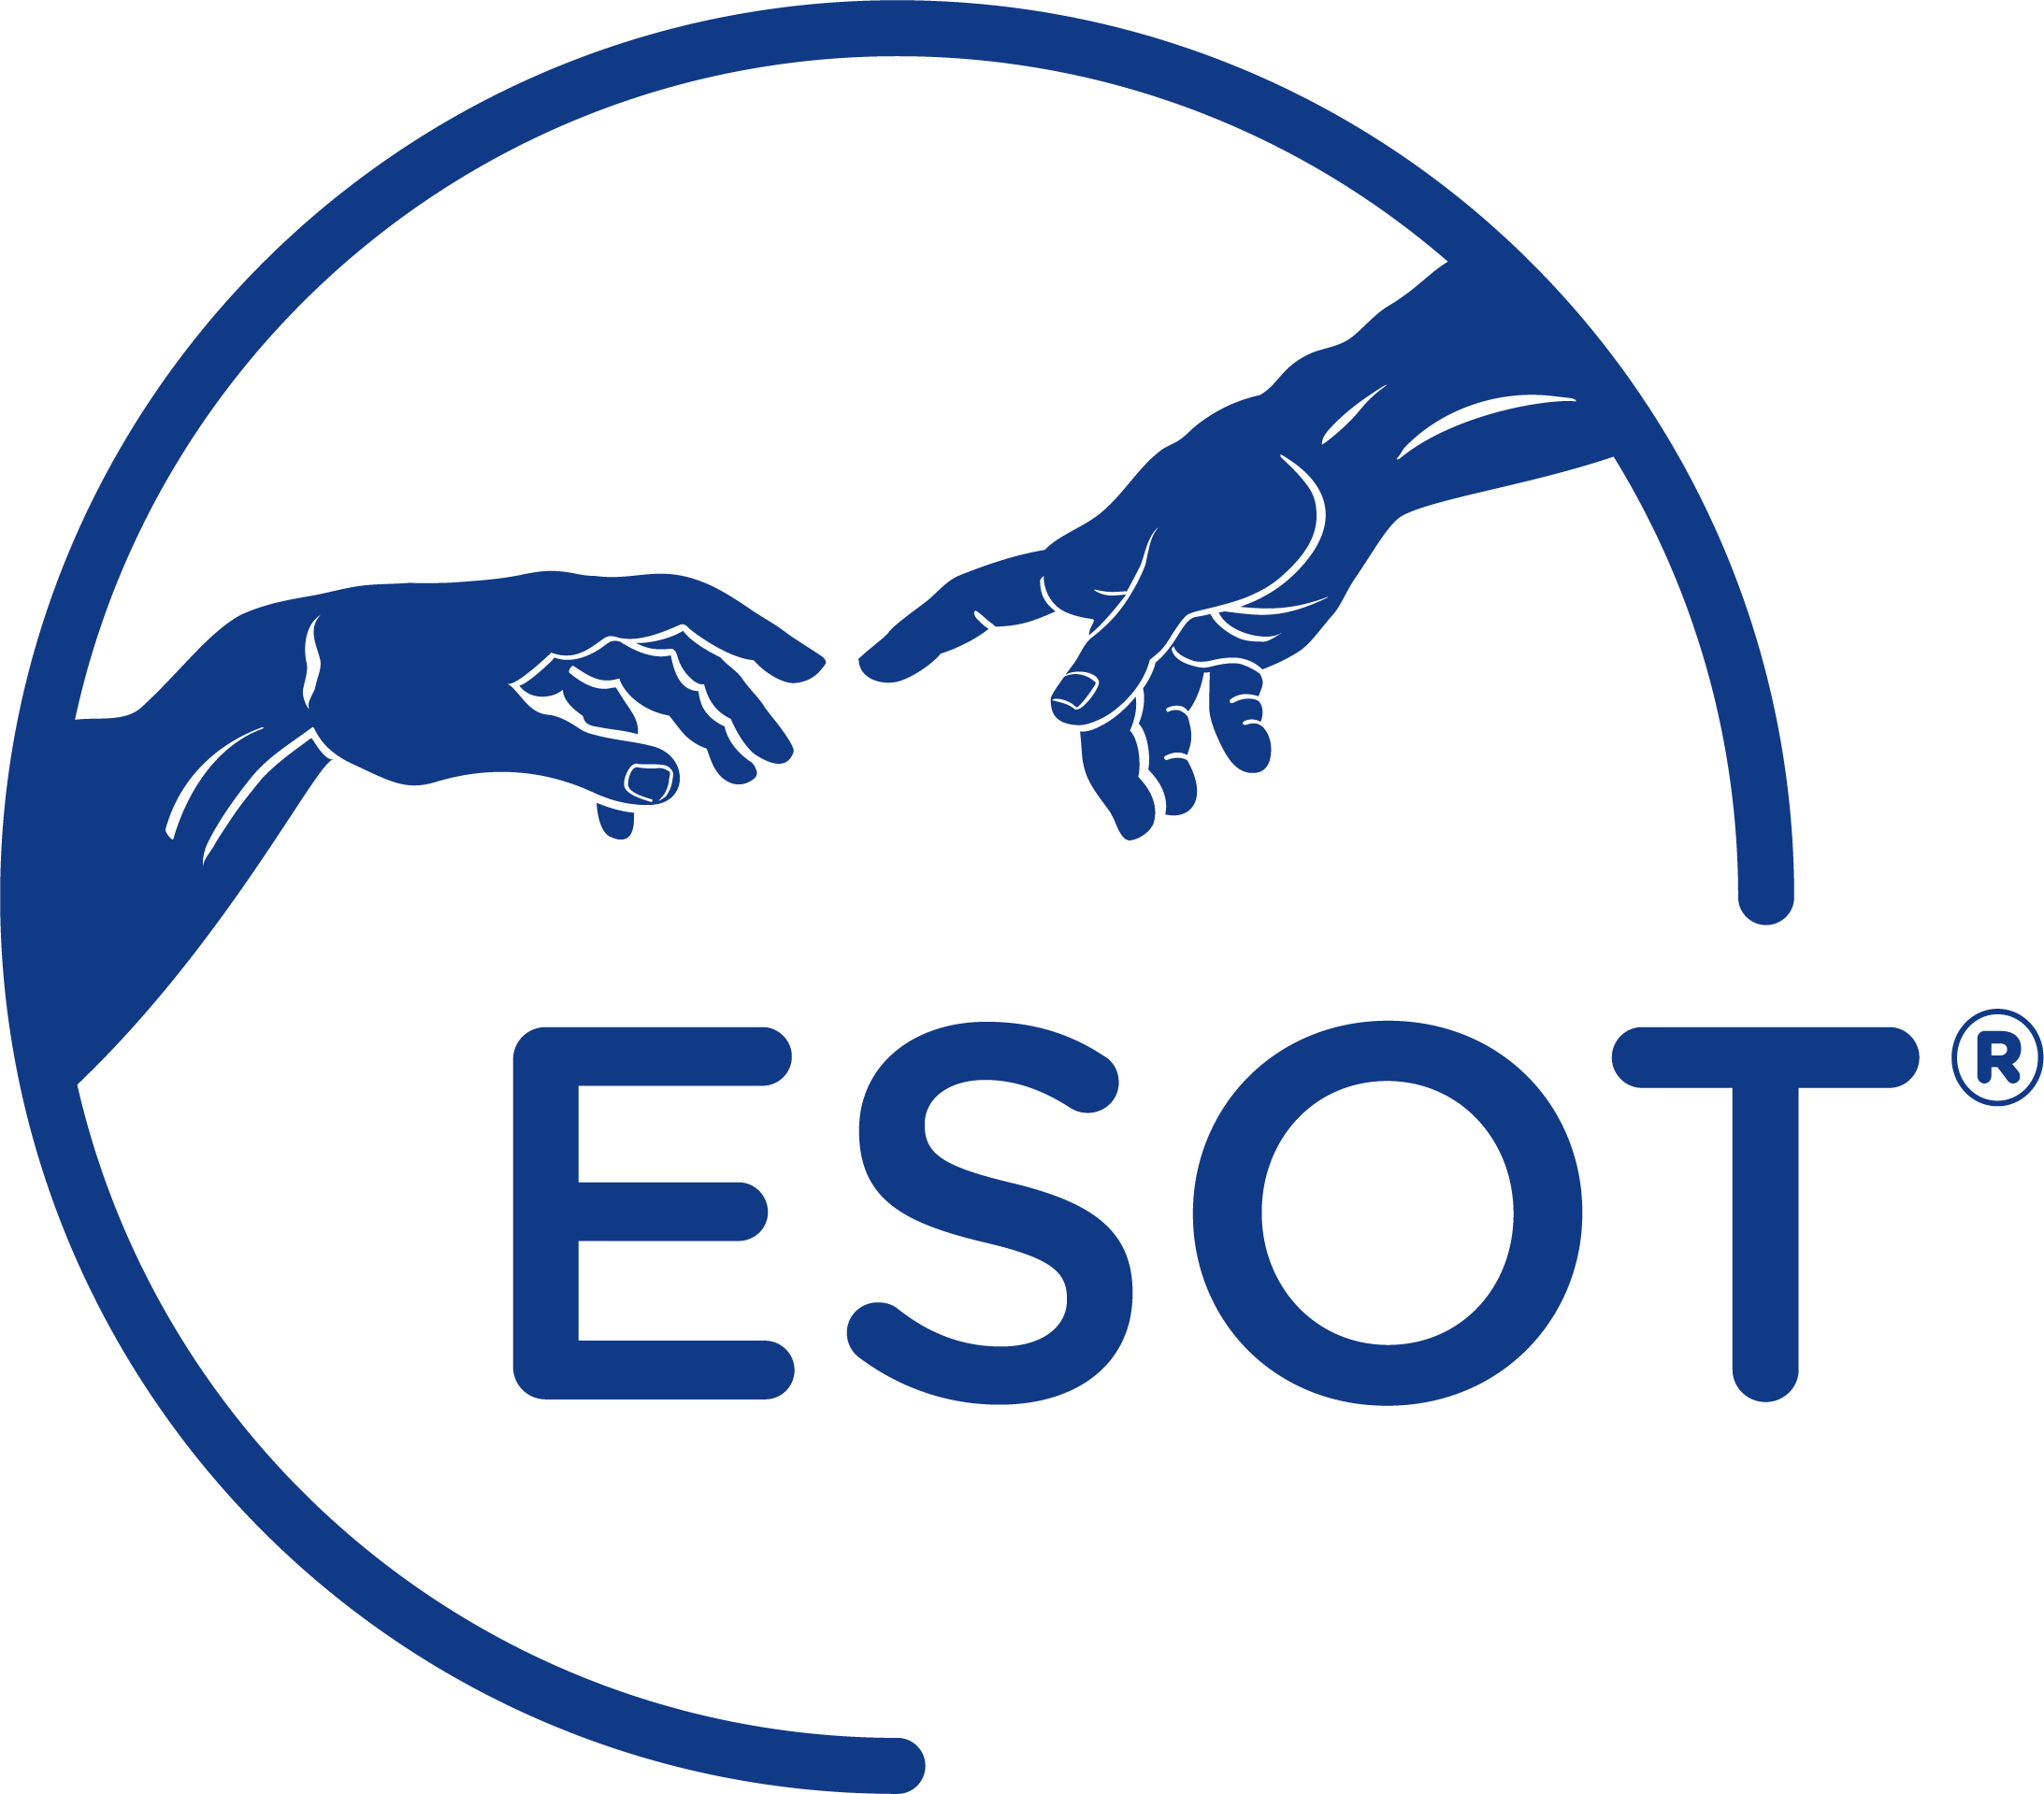 European Society for Organ Transplantation (ESOT)